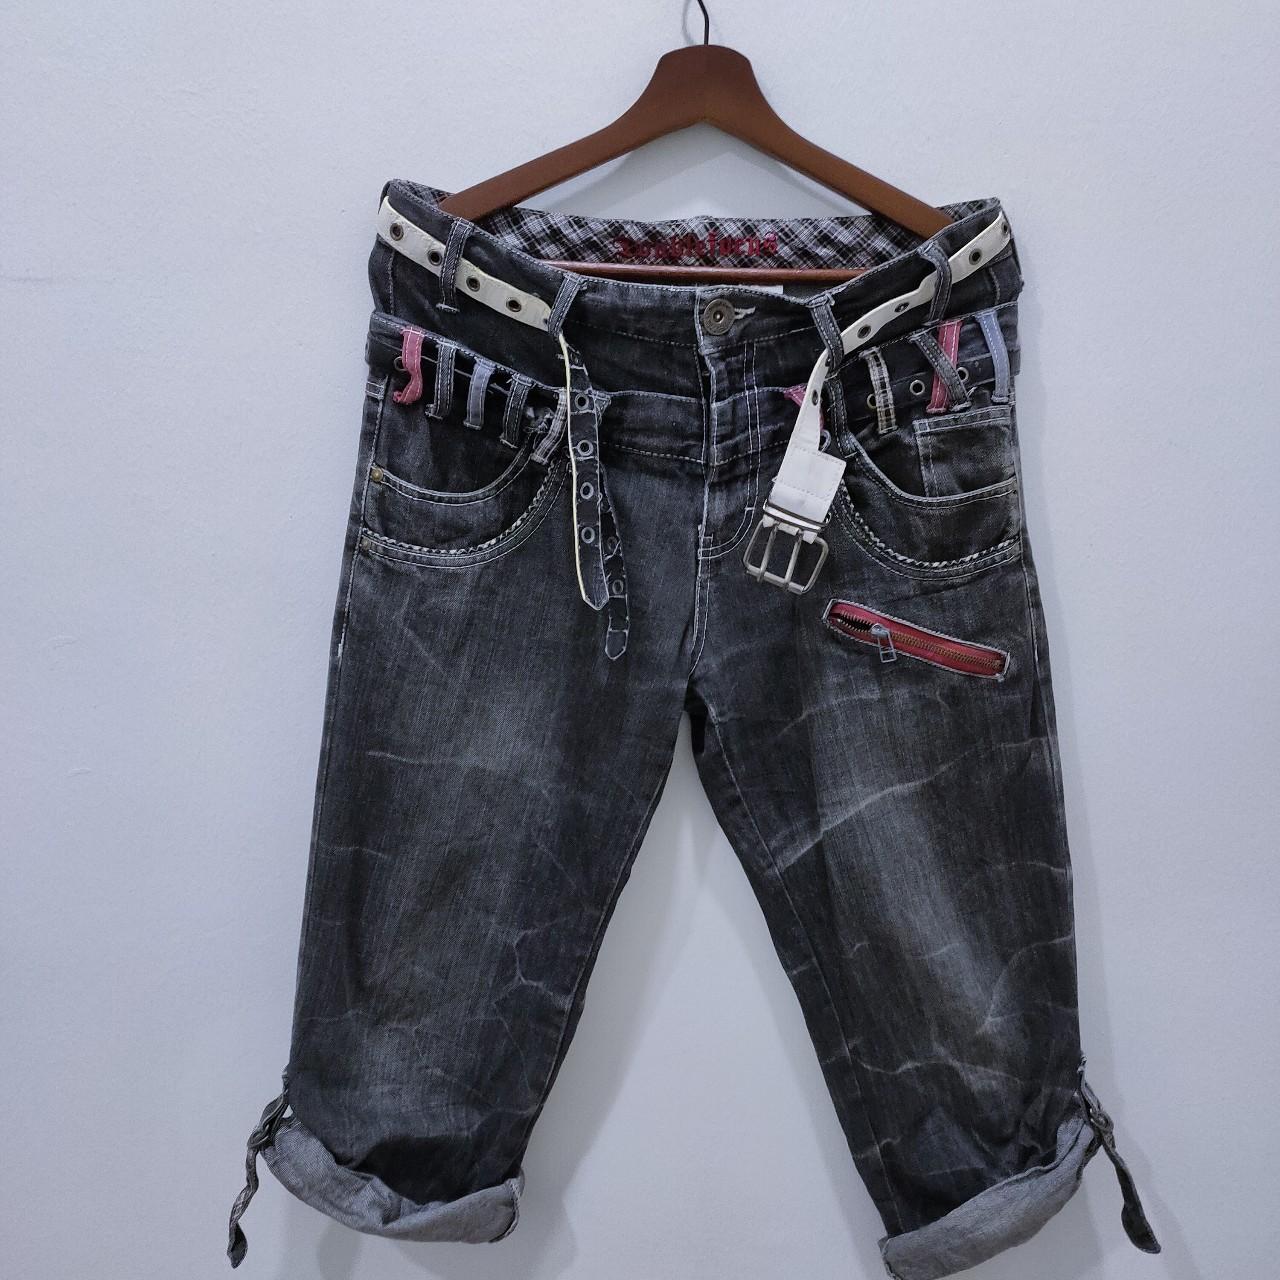 Men's Red Plaid Tartan Patchwork Punk Jeans